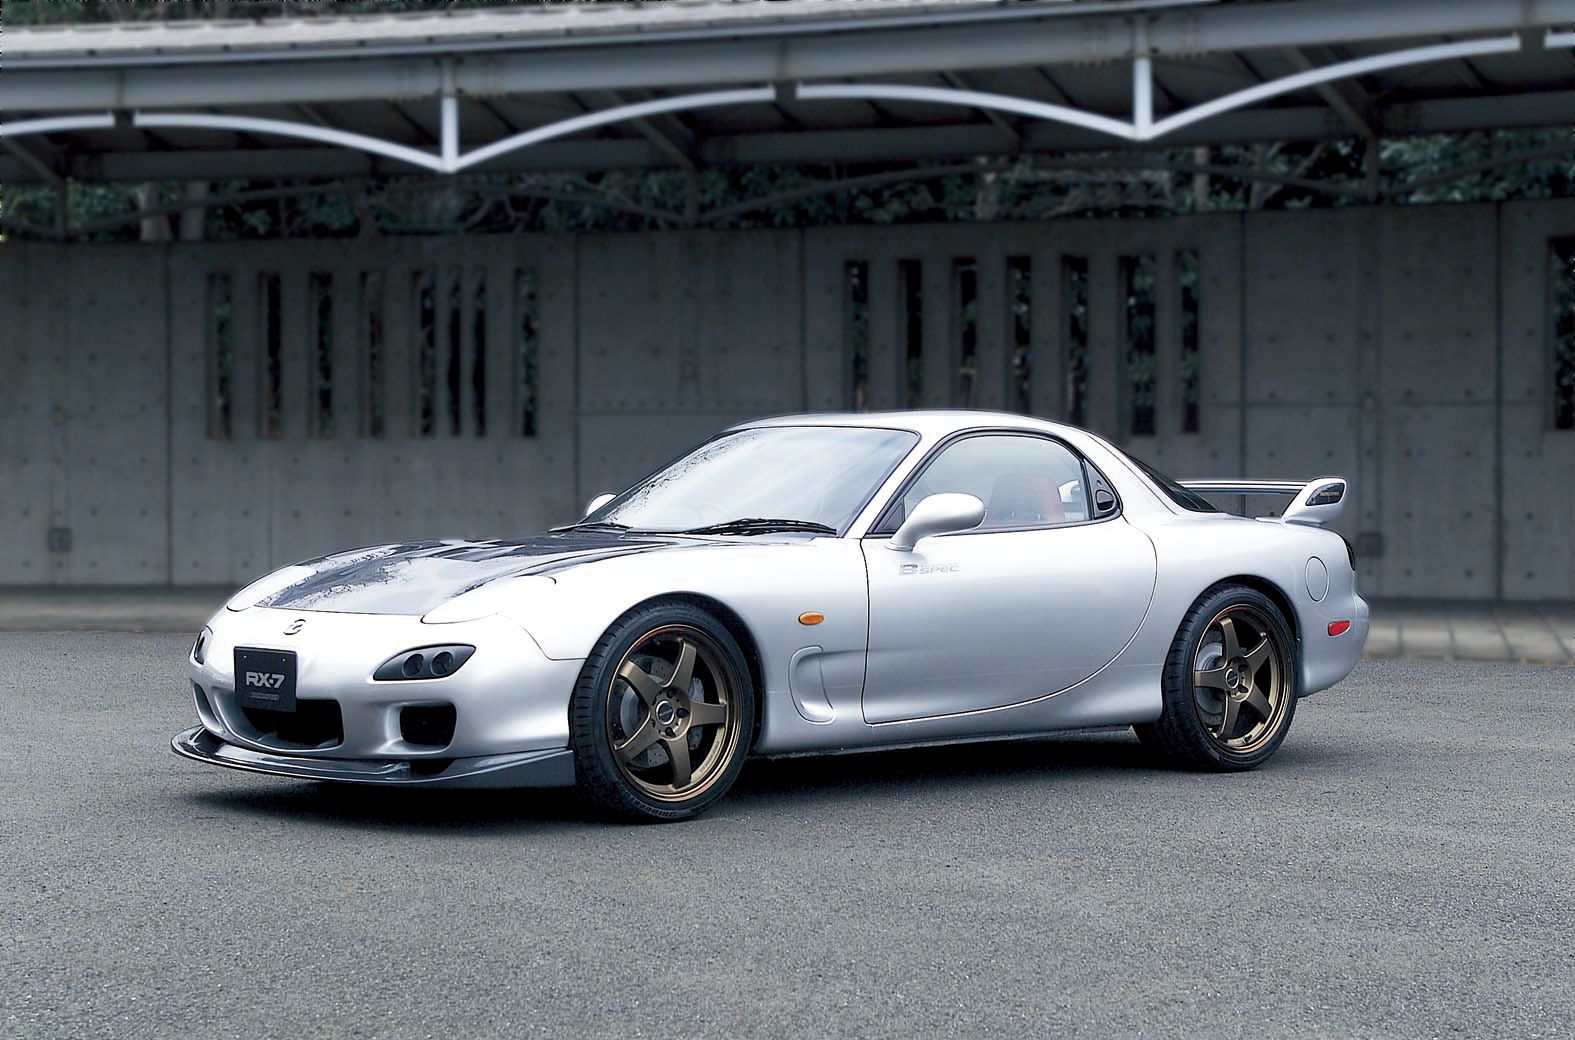 Mazda planning RX-7 restoration program for Japan